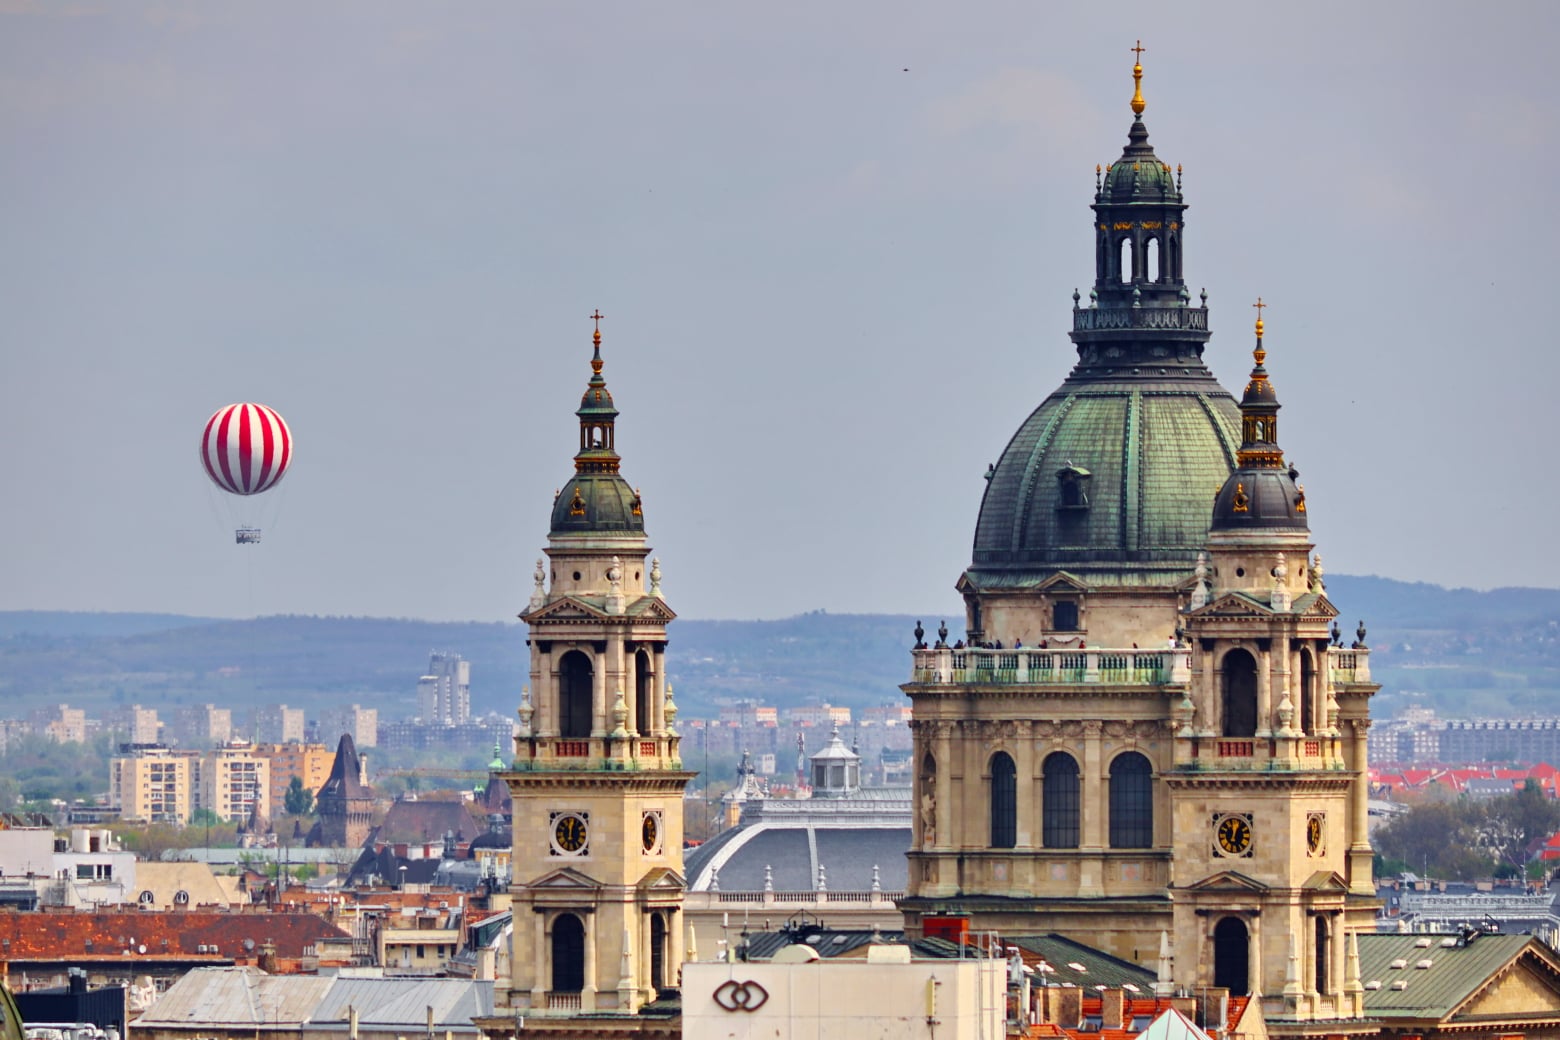 Turistáskodj Budapesten! - 7 kihagyhatatlan helyszín és program a felejthetetlen fővárosi élményért